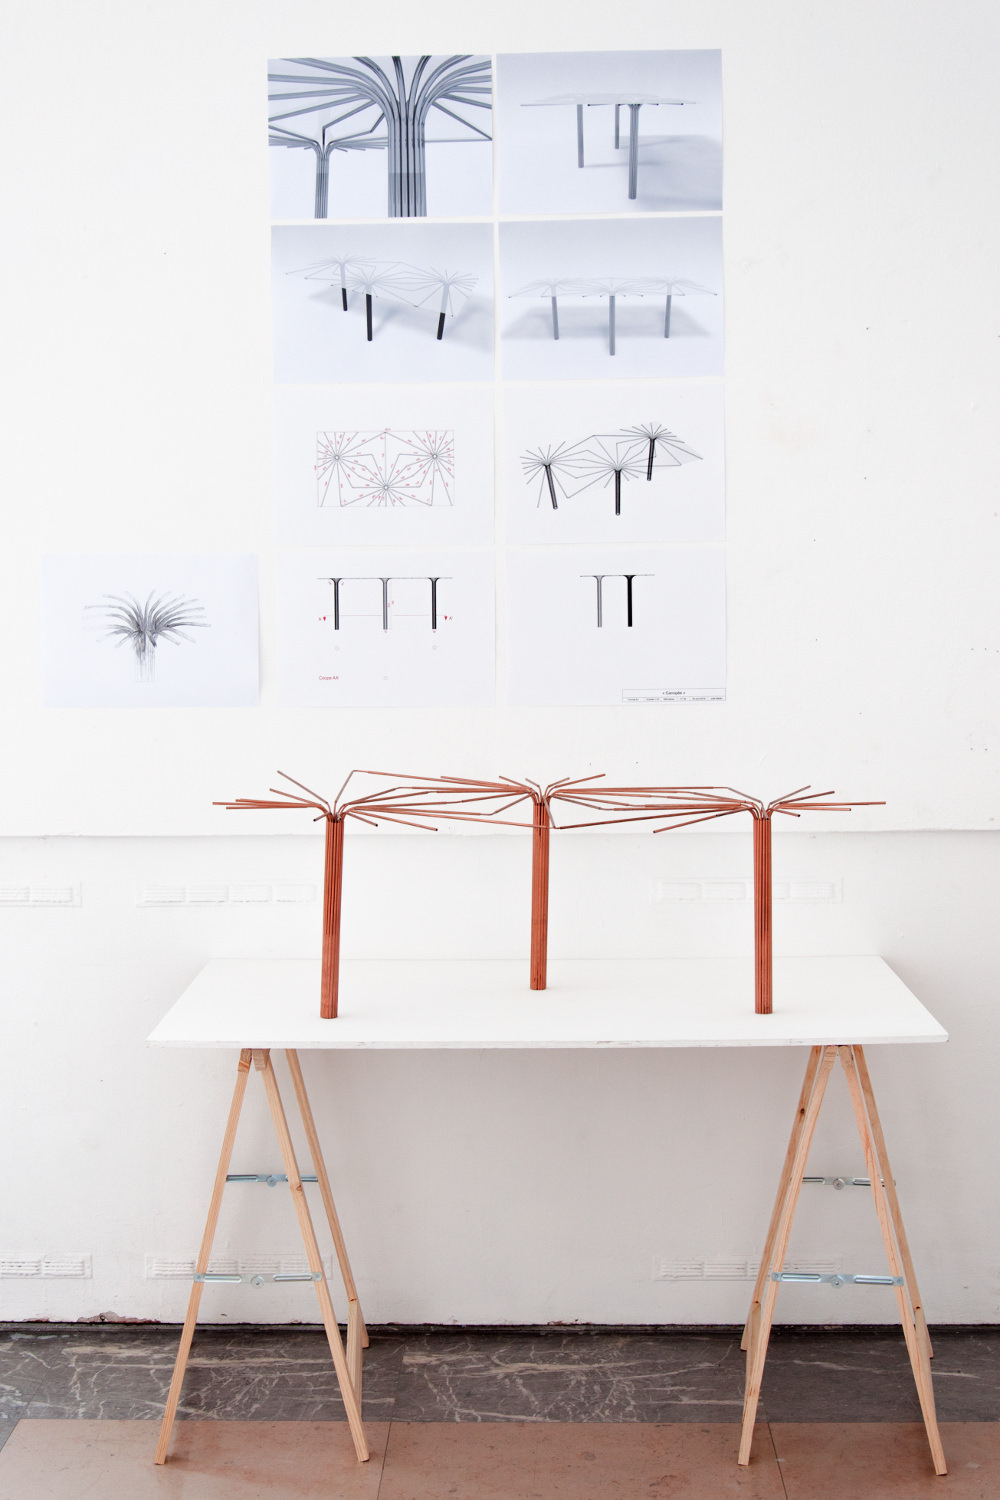 Projet étudiant : Table Canopée par Julie Martin ESAD de Reims